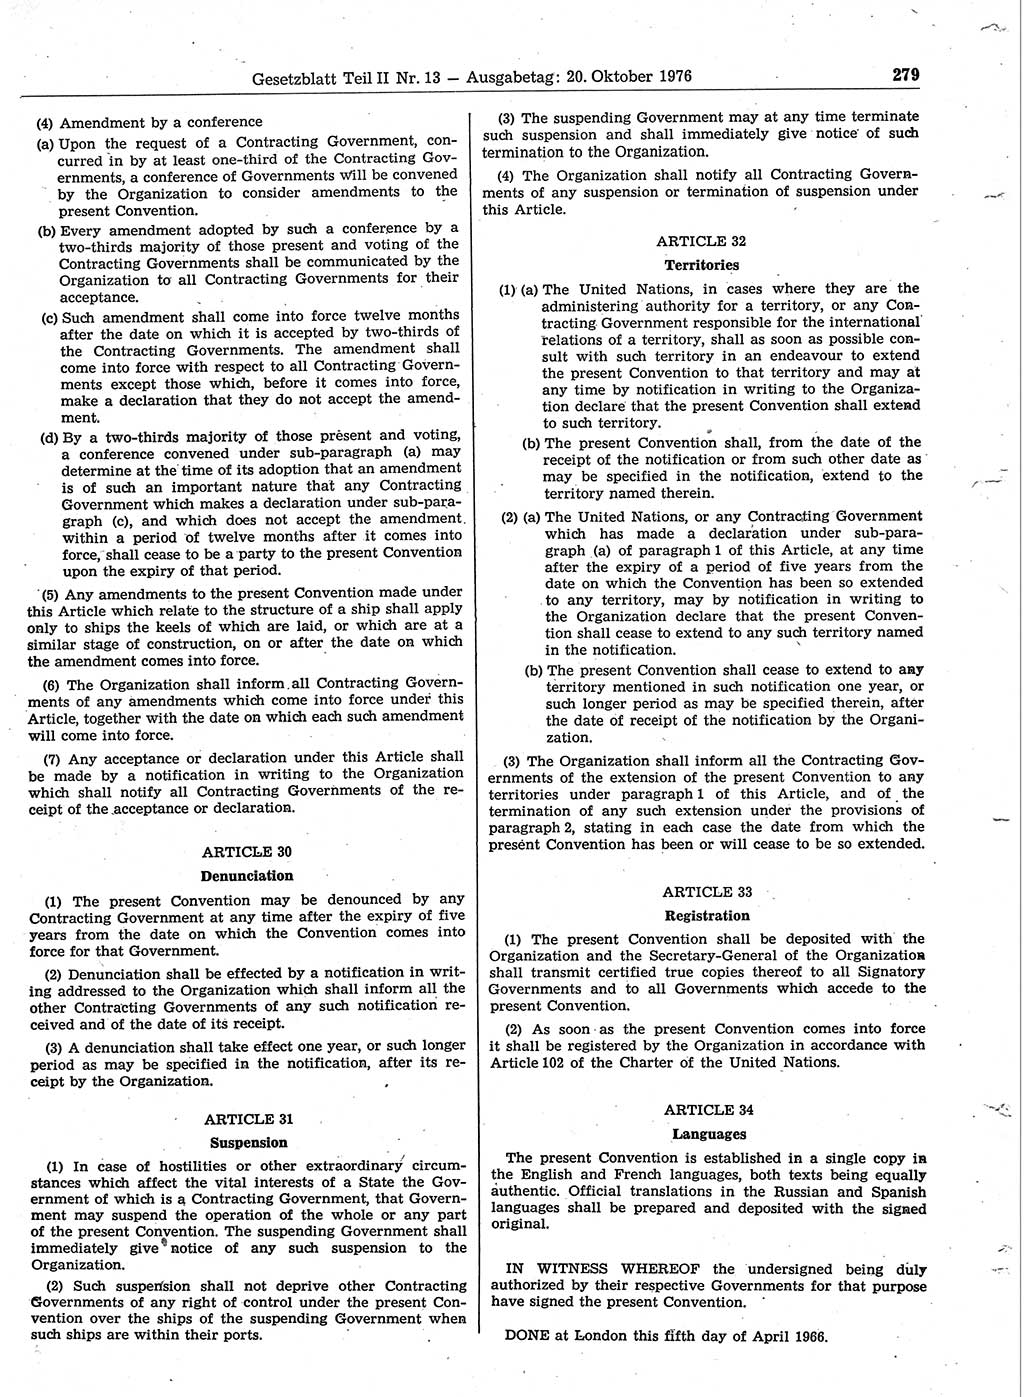 Gesetzblatt (GBl.) der Deutschen Demokratischen Republik (DDR) Teil ⅠⅠ 1976, Seite 279 (GBl. DDR ⅠⅠ 1976, S. 279)